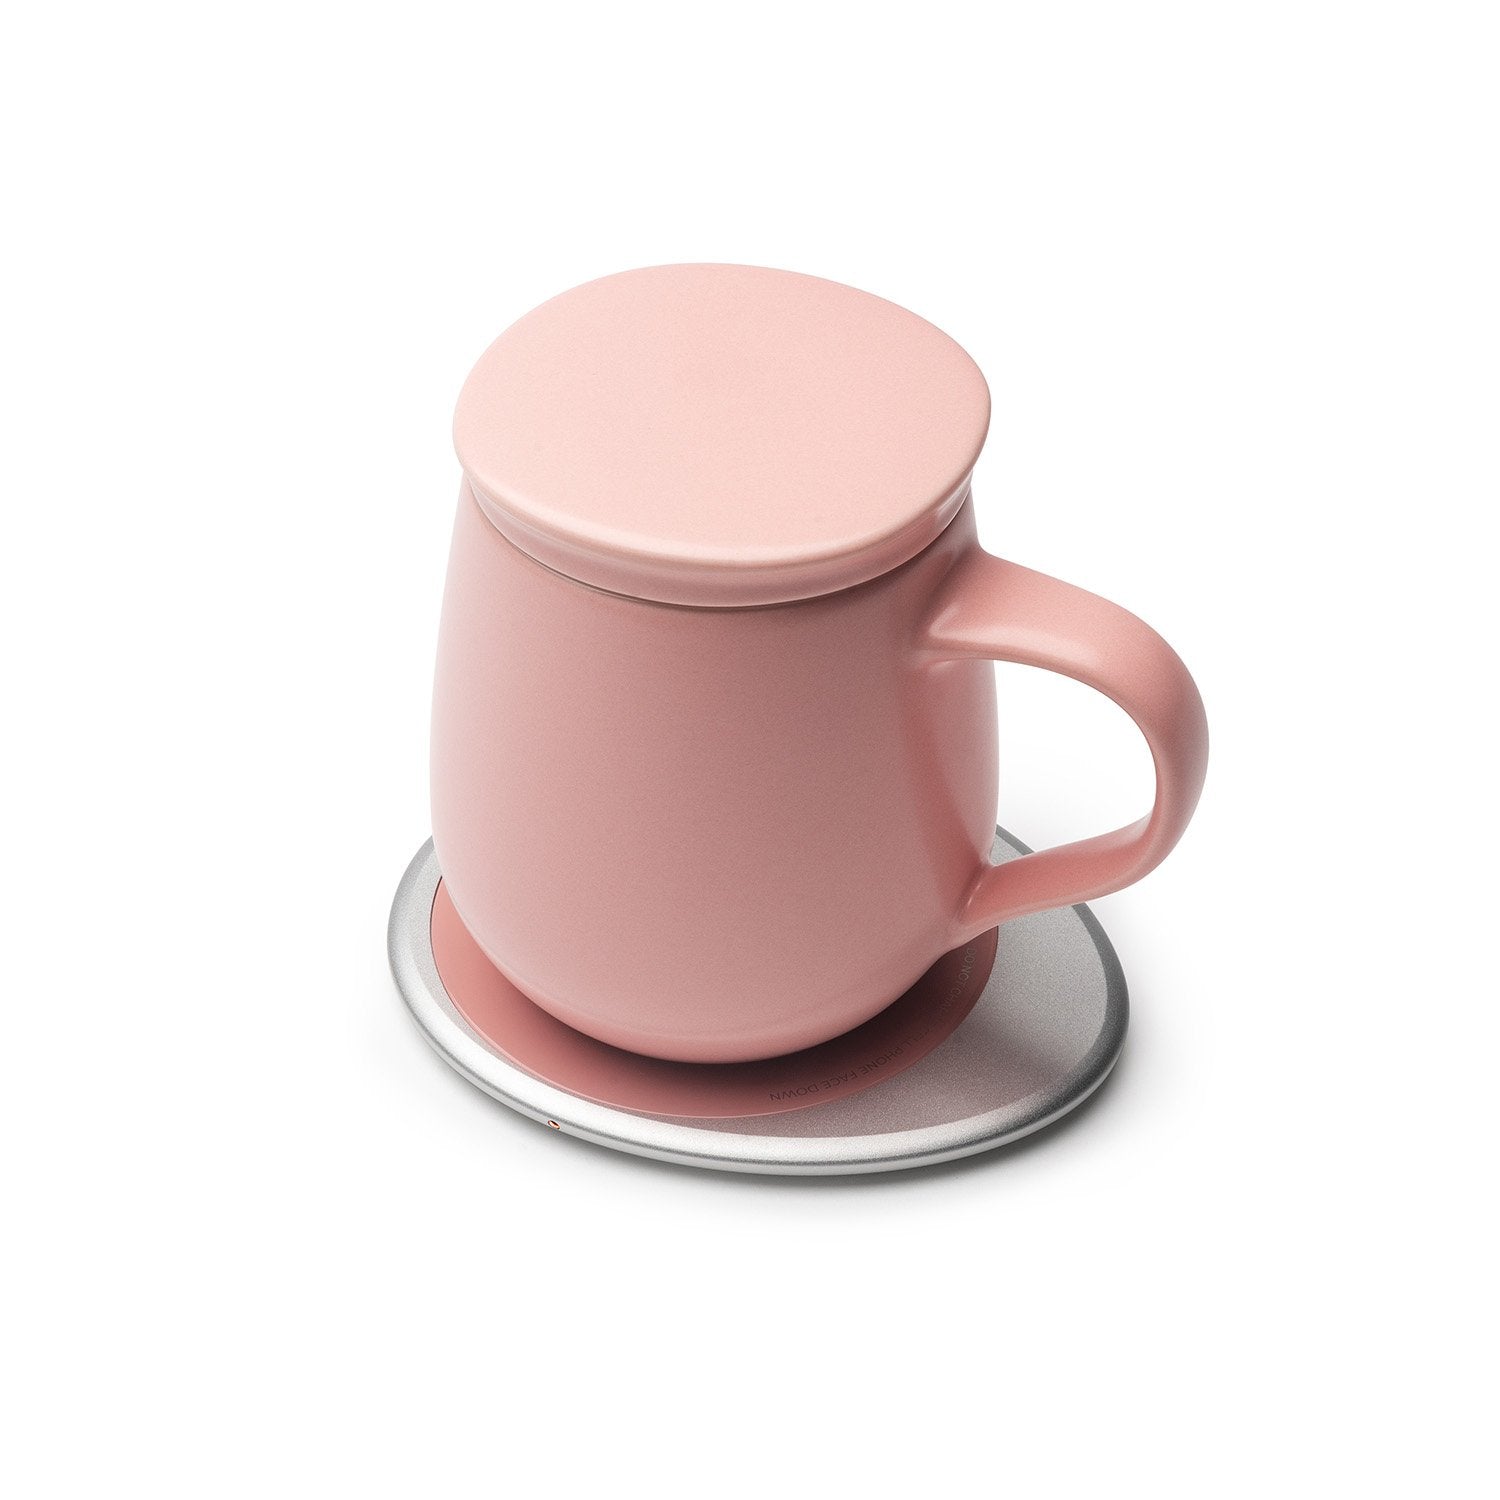 Pink mug with lid on heating pad